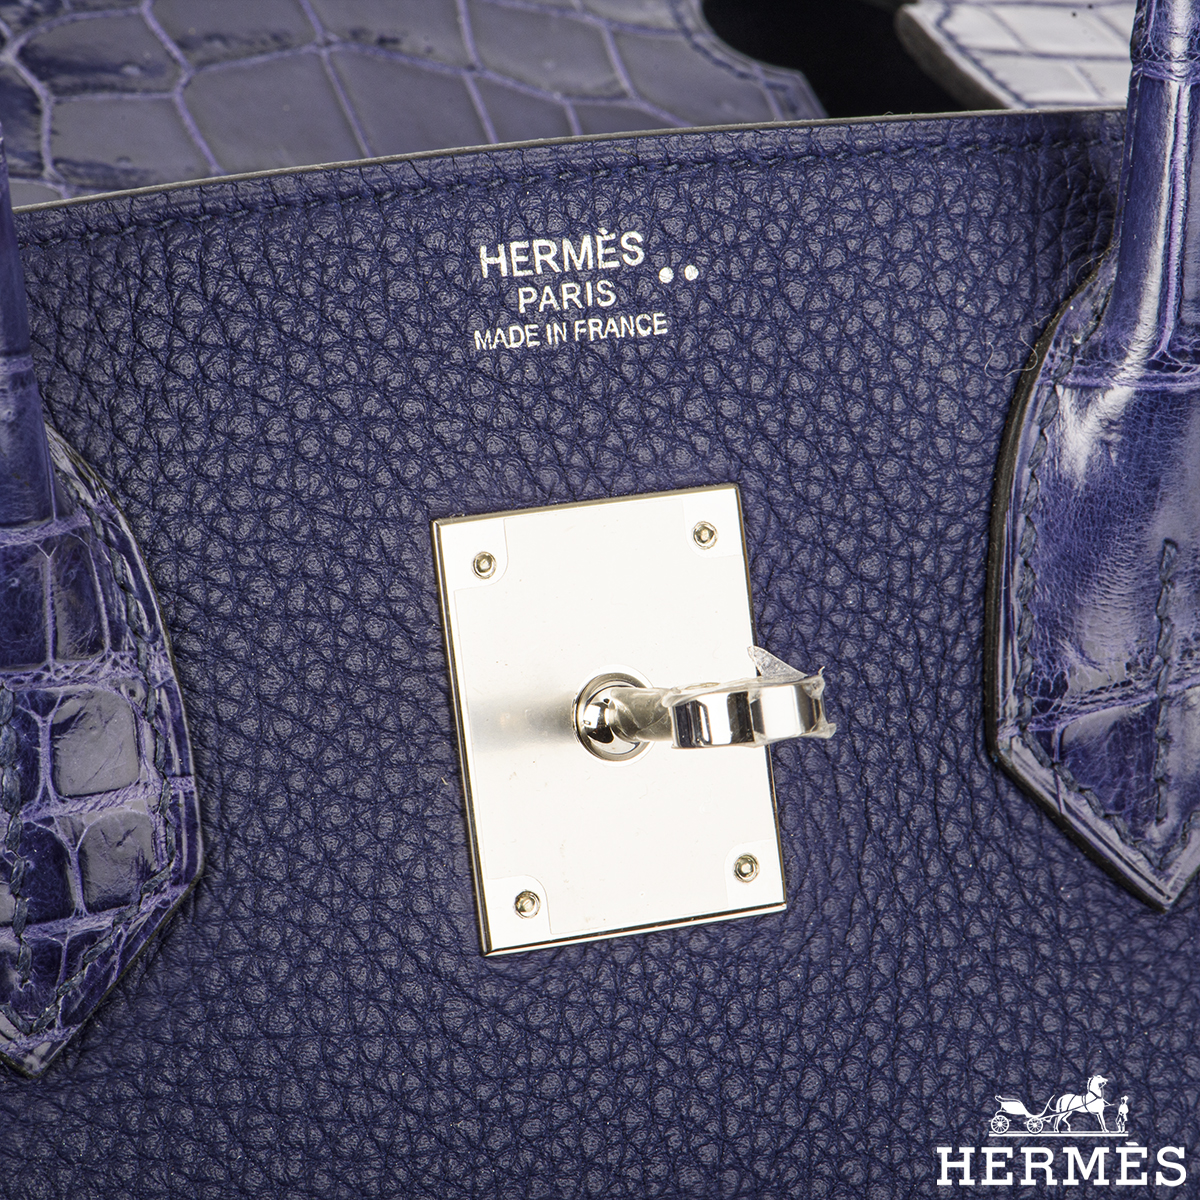 Hermès Birkin 30cm Bleu Encre Touch Veau Togo/Croco Nilo Lisse